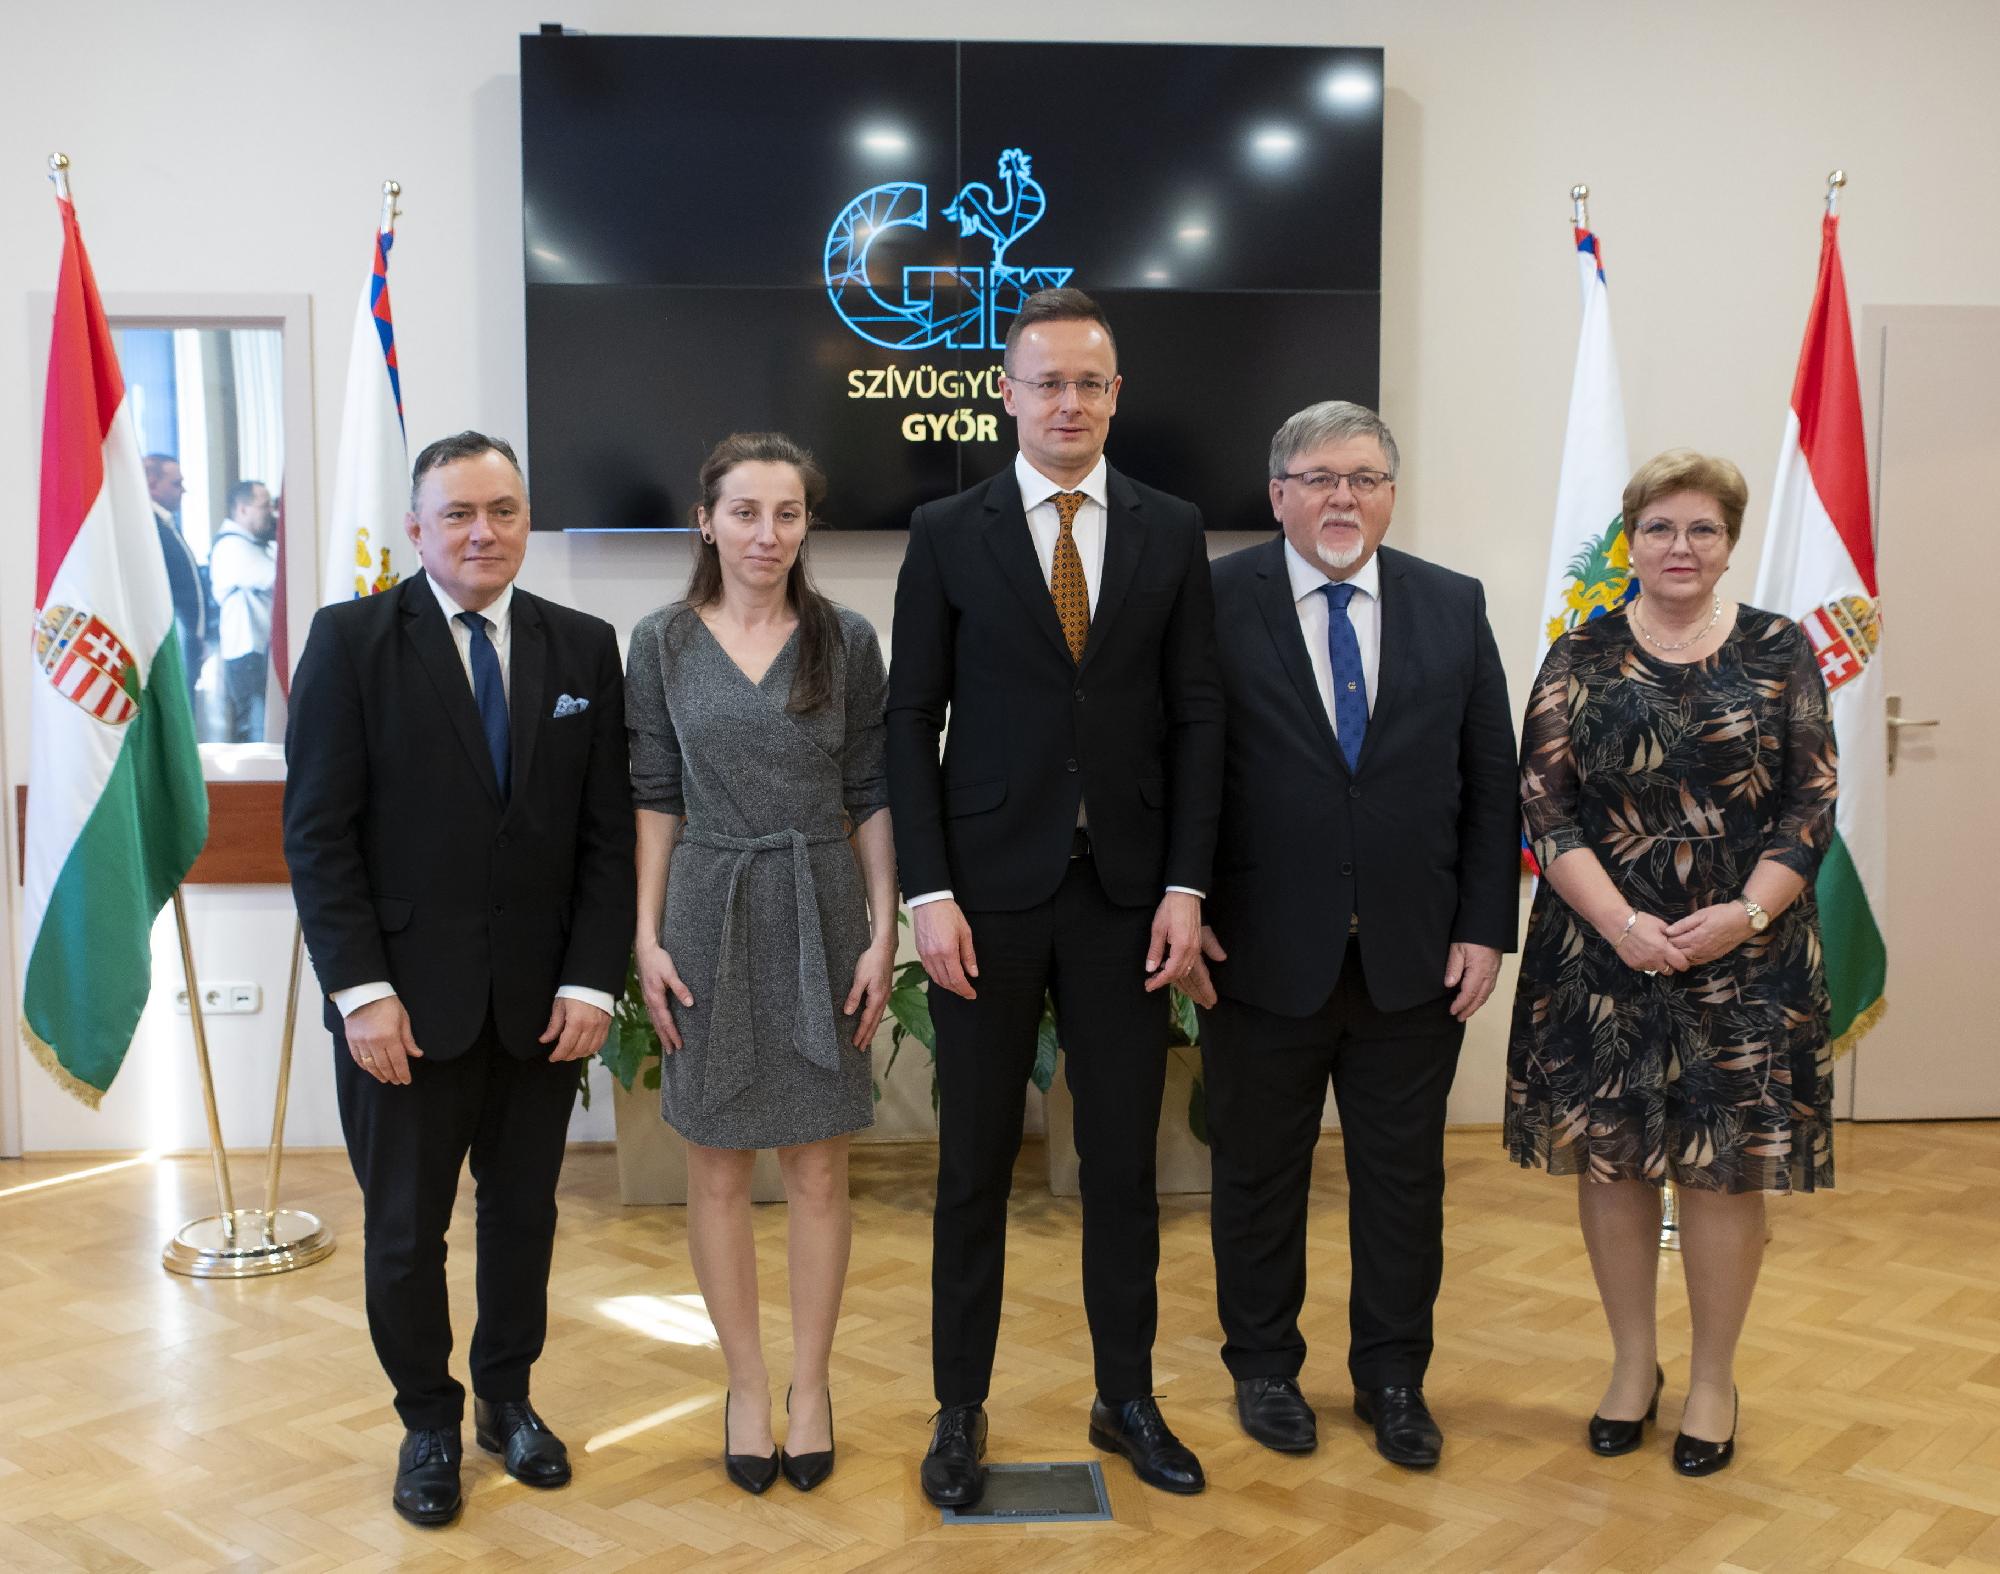 Szijjártó Péter: a kormány készen áll a sikeres együttműködés folytatására Győrrel